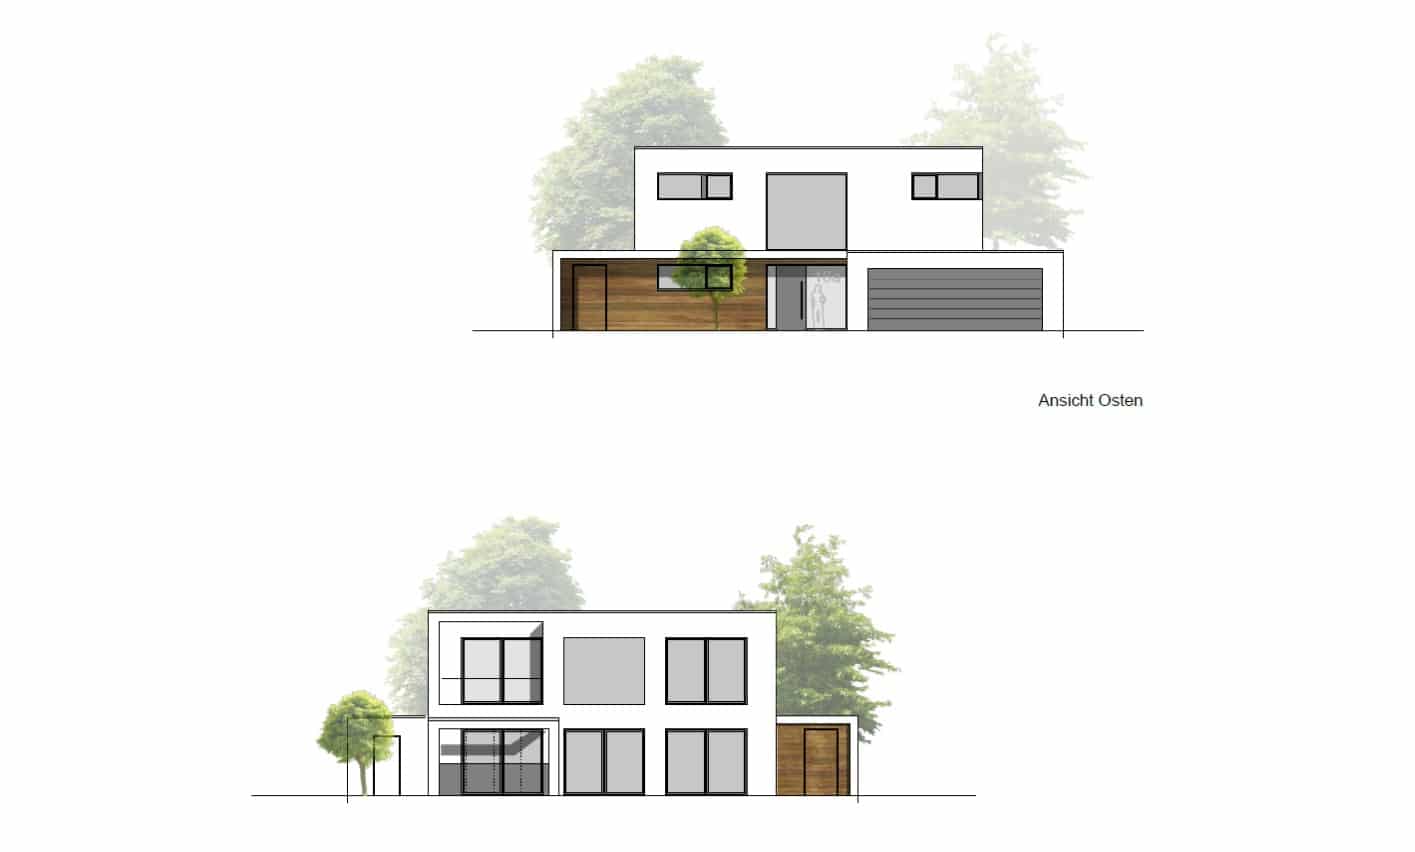 Entwurf Nr.3 entwurf nr. 3 Entwurf Nr. 3 – So machen wir es! Der Dritte Entwurf HousePit Architekt